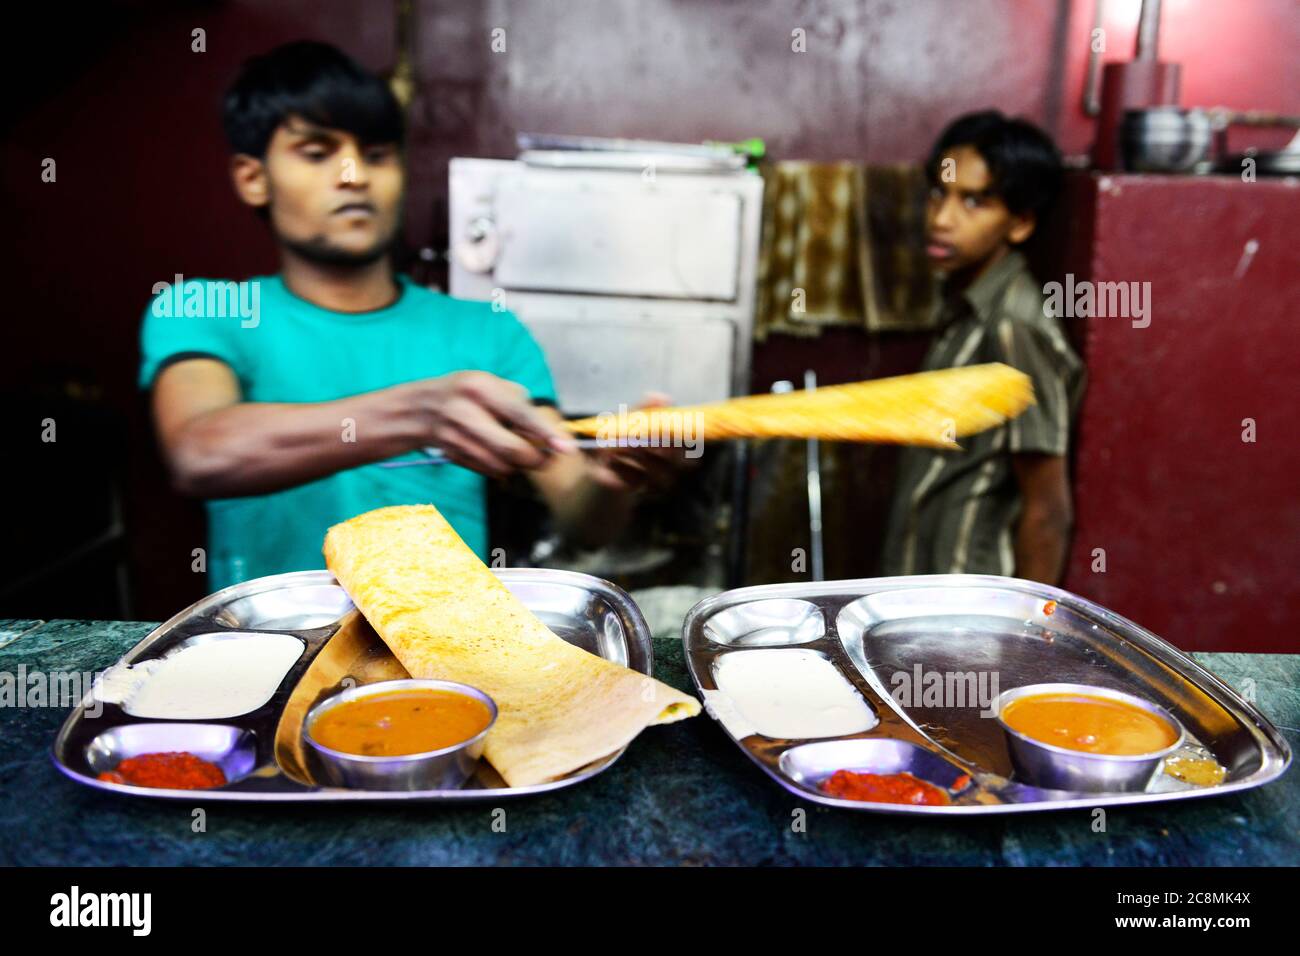 Le petit-déjeuner est servi au Masala Dosa dans un restaurant du sud de l'Inde. Banque D'Images